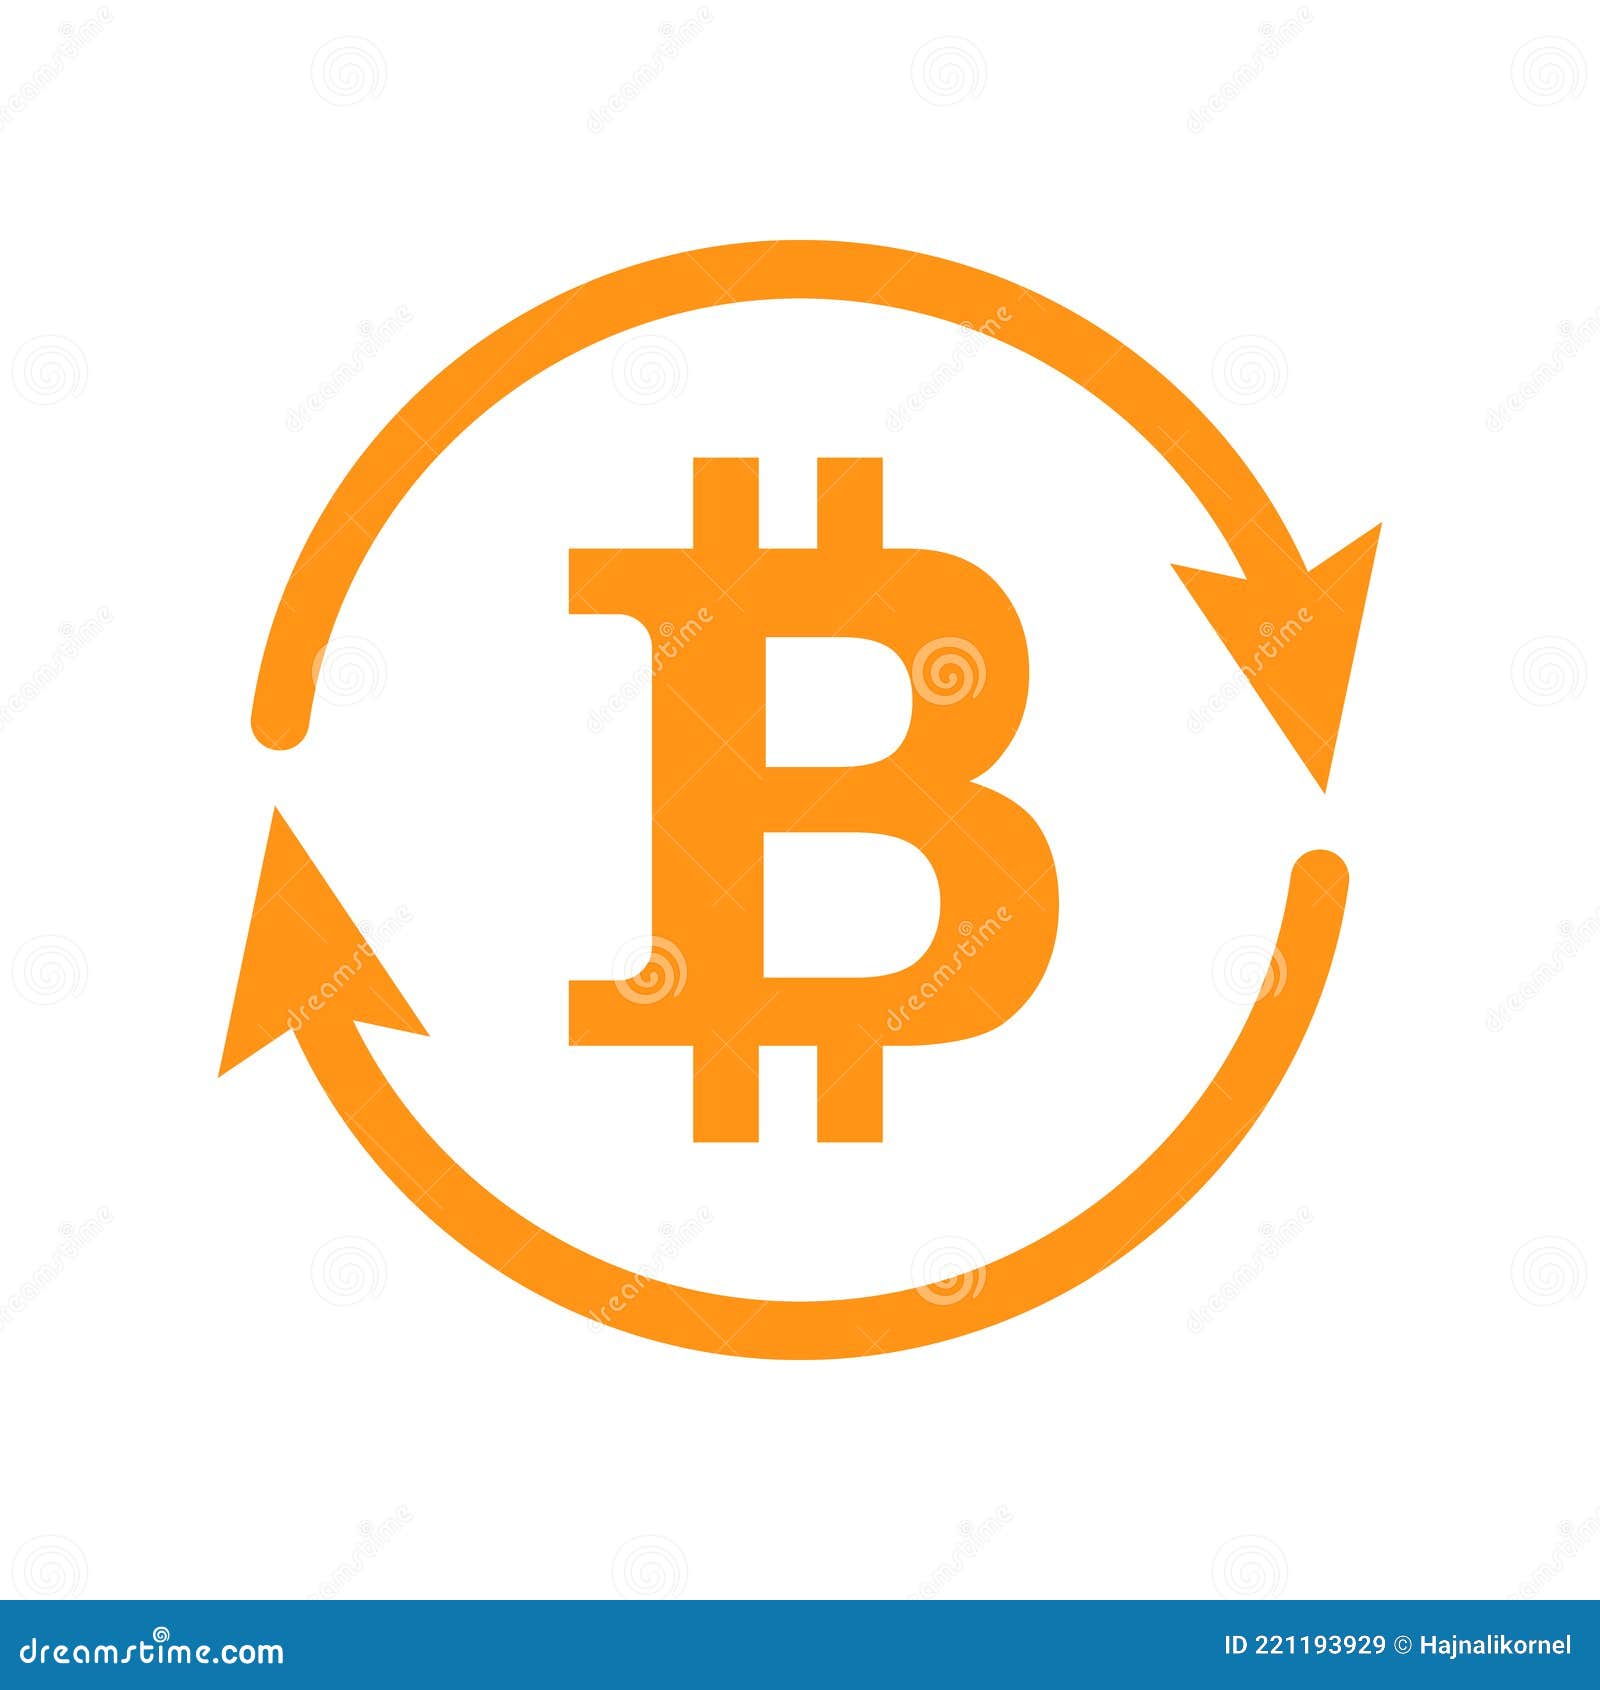 Biểu tượng Bitcoin đã trở thành một biểu tượng của sự phát triển kinh tế của thế giới kỹ thuật số. Dễ dàng nhận biết và được yêu thích trên toàn thế giới, hãy khám phá biểu tượng Bitcoin để tìm hiểu về một trong những đổi mới kinh tế đáng chú ý nhất trong thời đại digital.